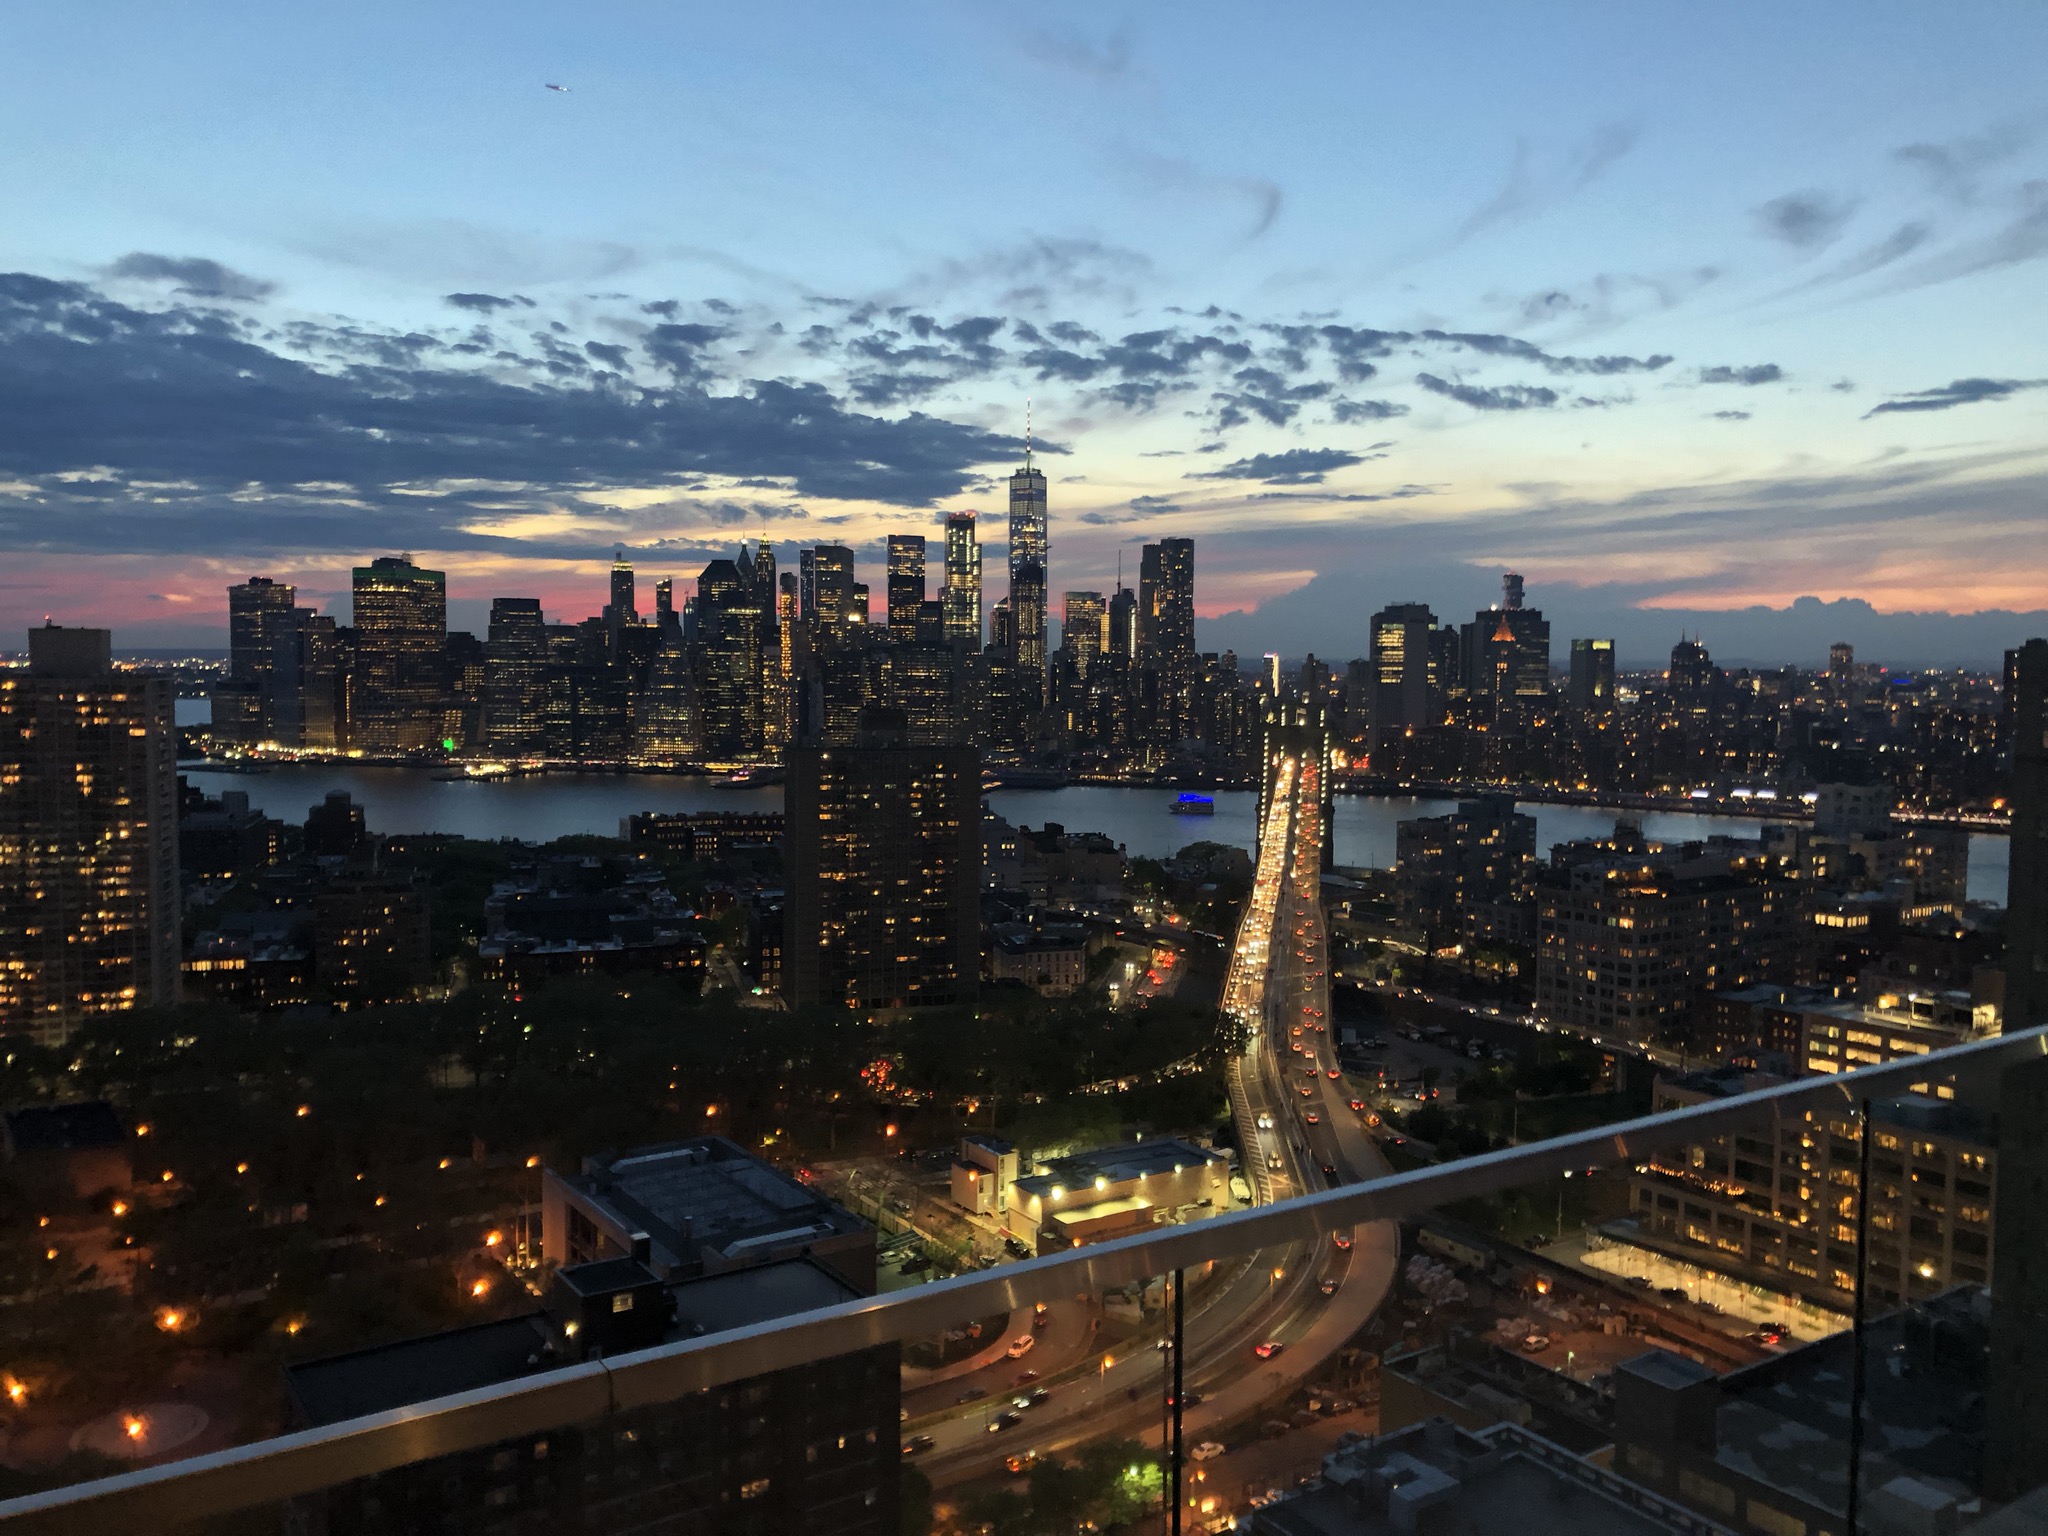 The New York City skyline at dusk.